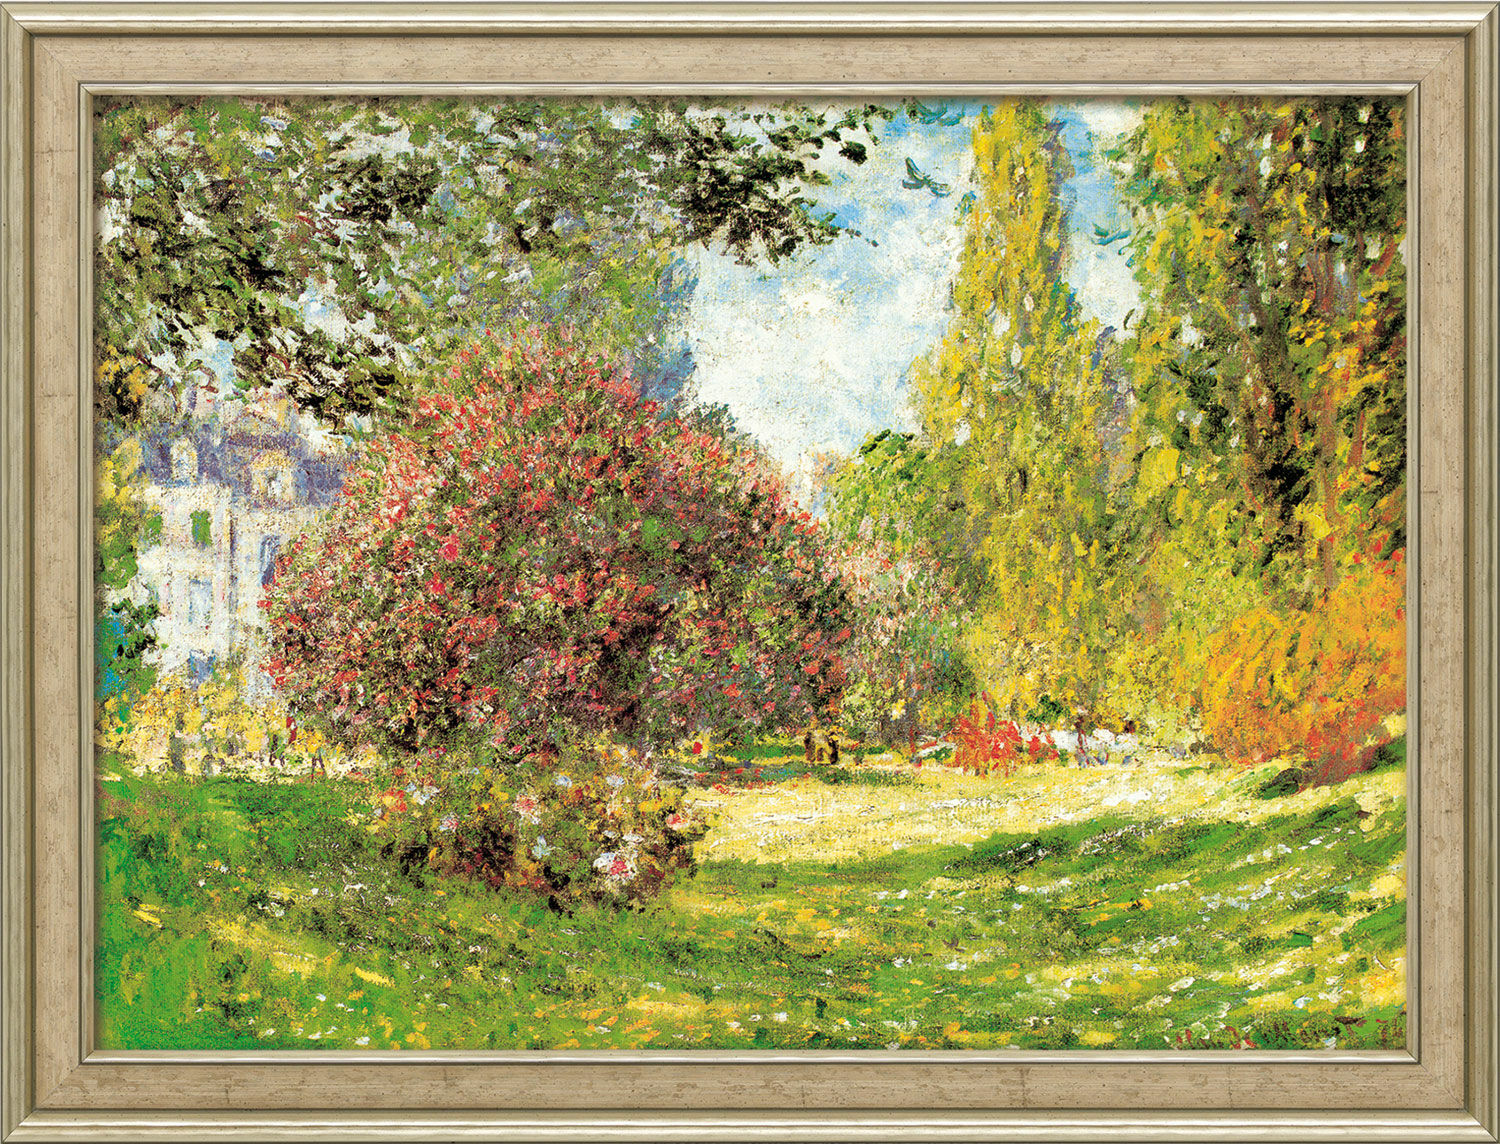 Tableau "Le Parc Monceau" (1876), encadré von Claude Monet